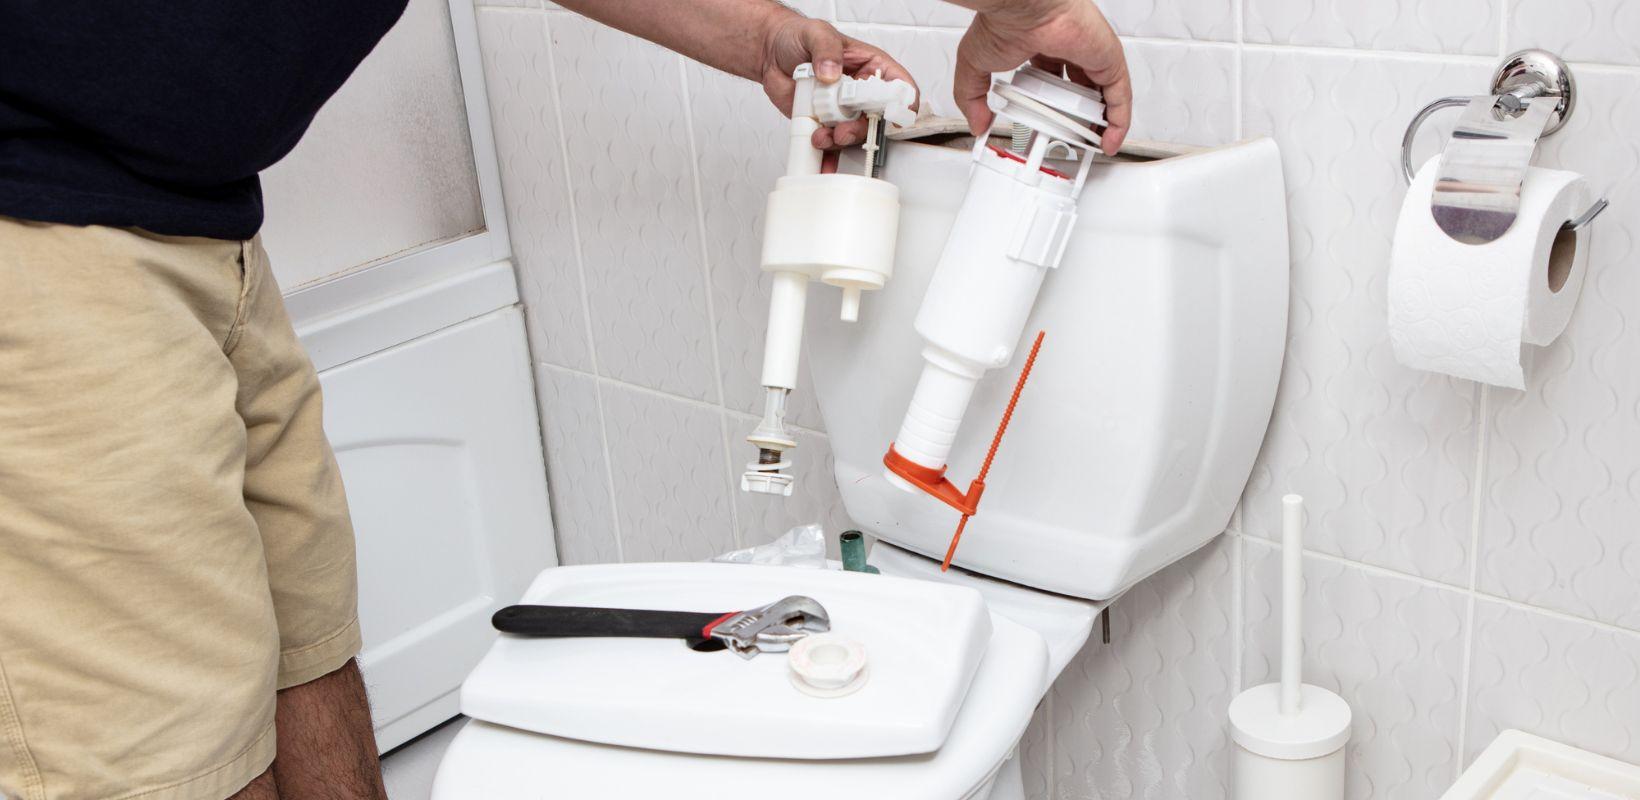 Débouchage de WC : coûts, méthodes, prévention et conseils pratiques